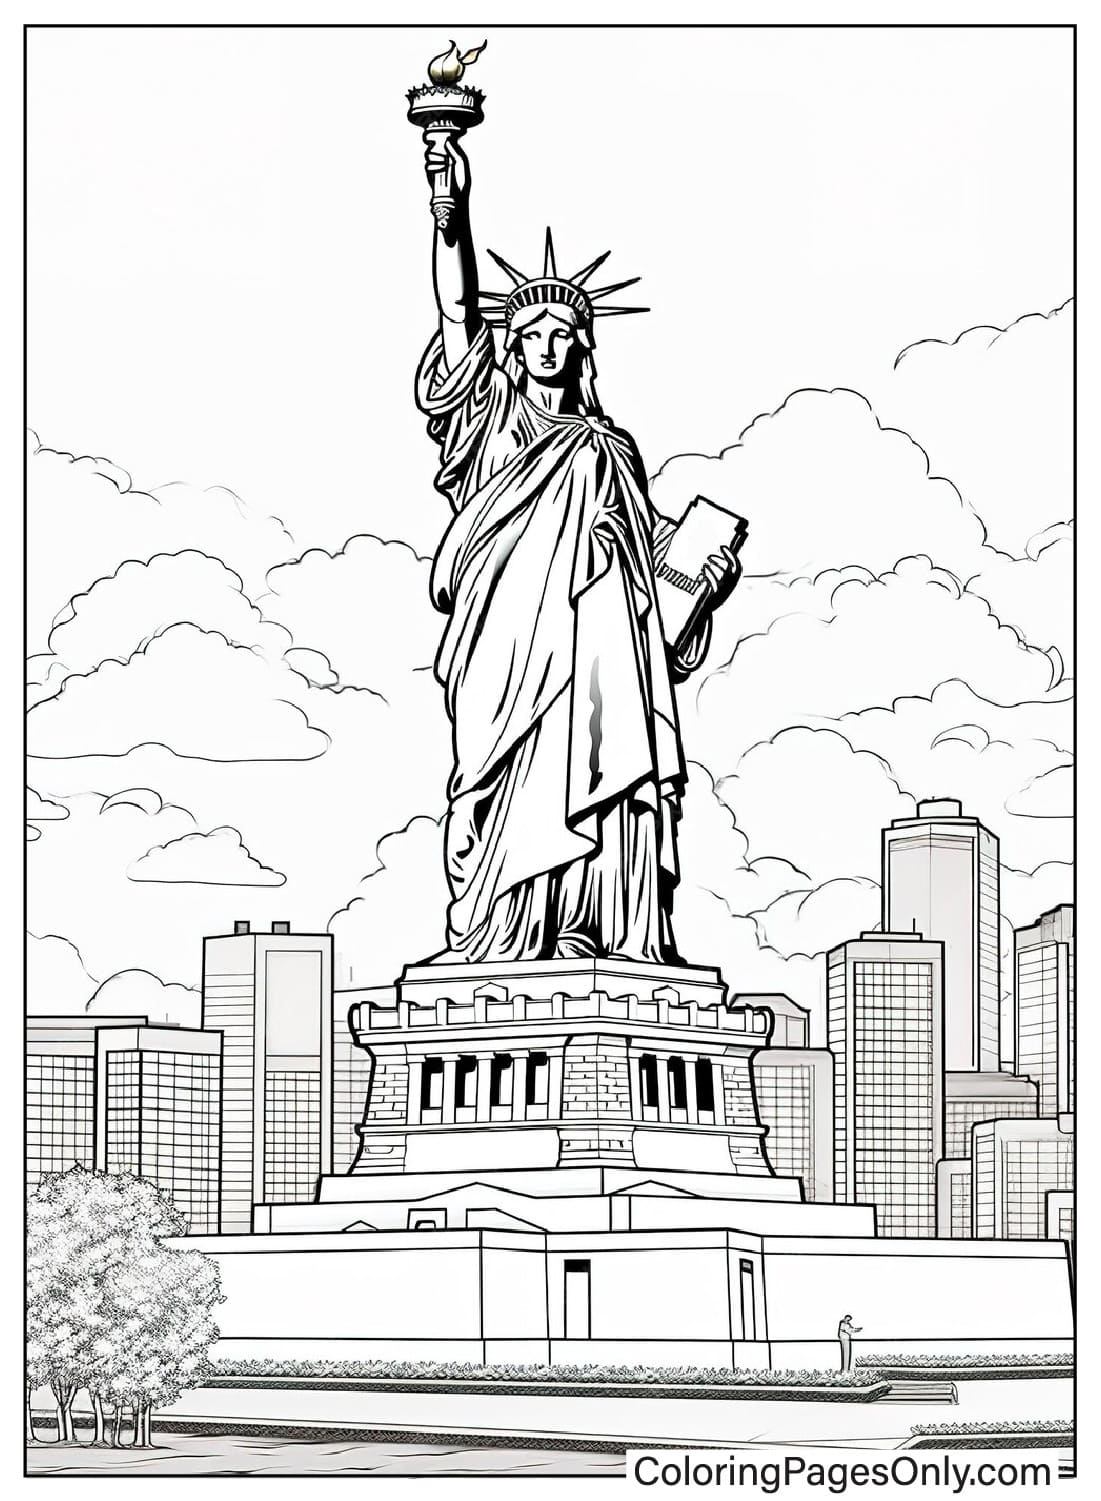 Pagina da colorare realistica della Statua della Libertà